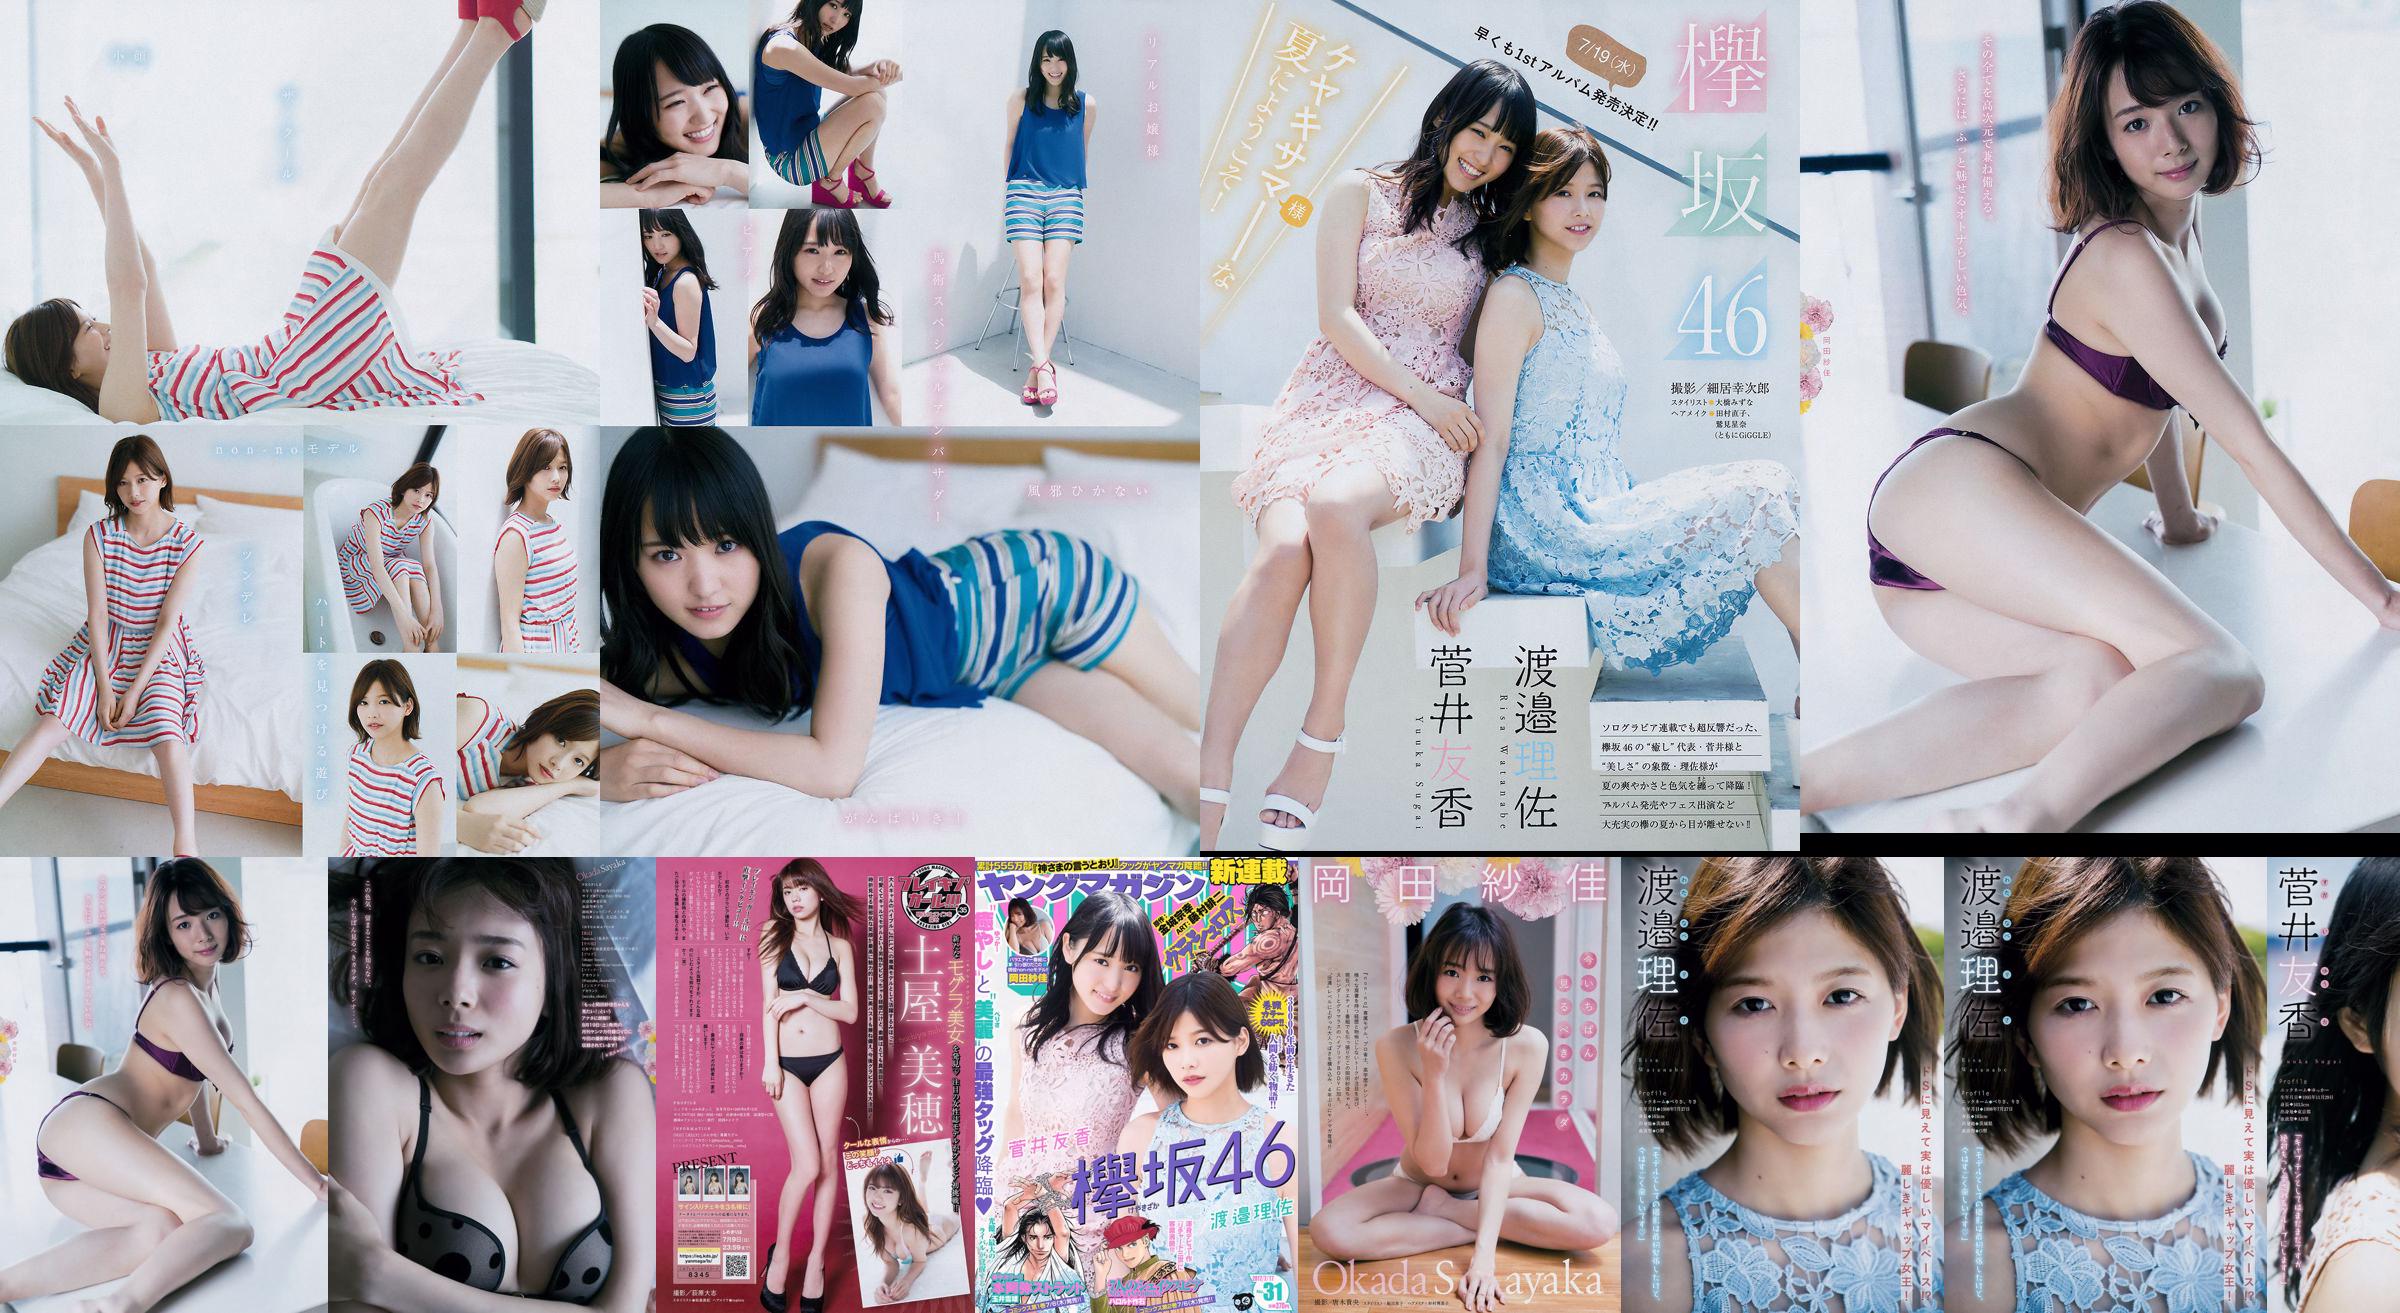 [Junges Magazin] Watanabe Risa, Sugai Yuka, Okada Saika 2017 Nr. 31 Fotomagazin No.55b0a6 Seite 1